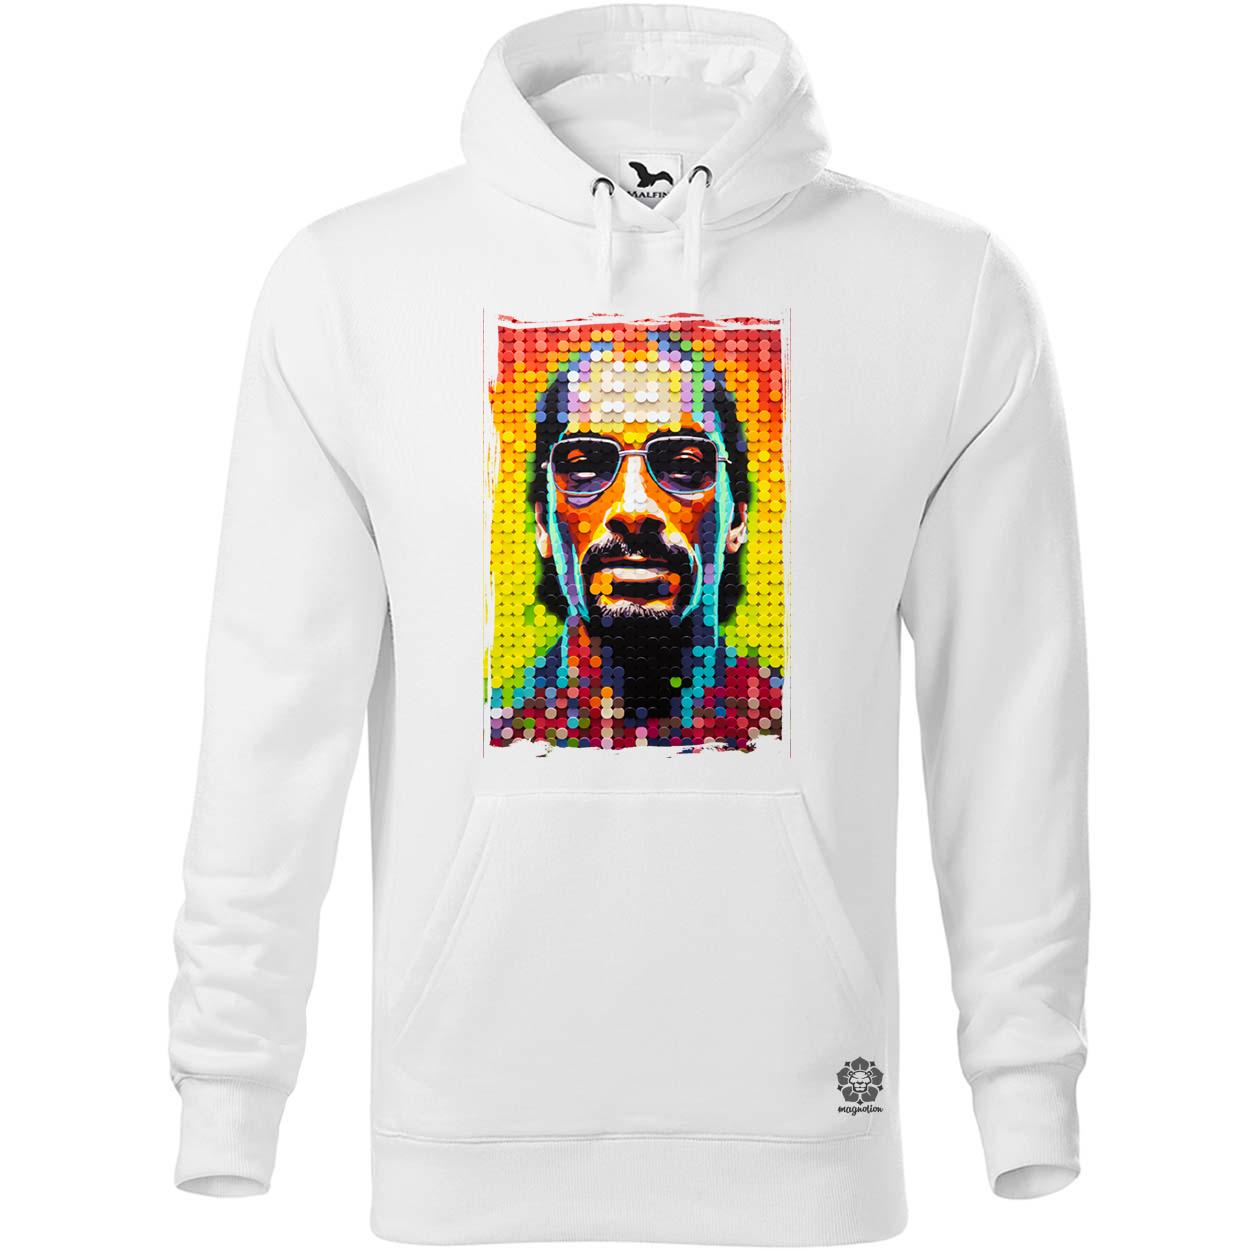 Snoop Dogg v3